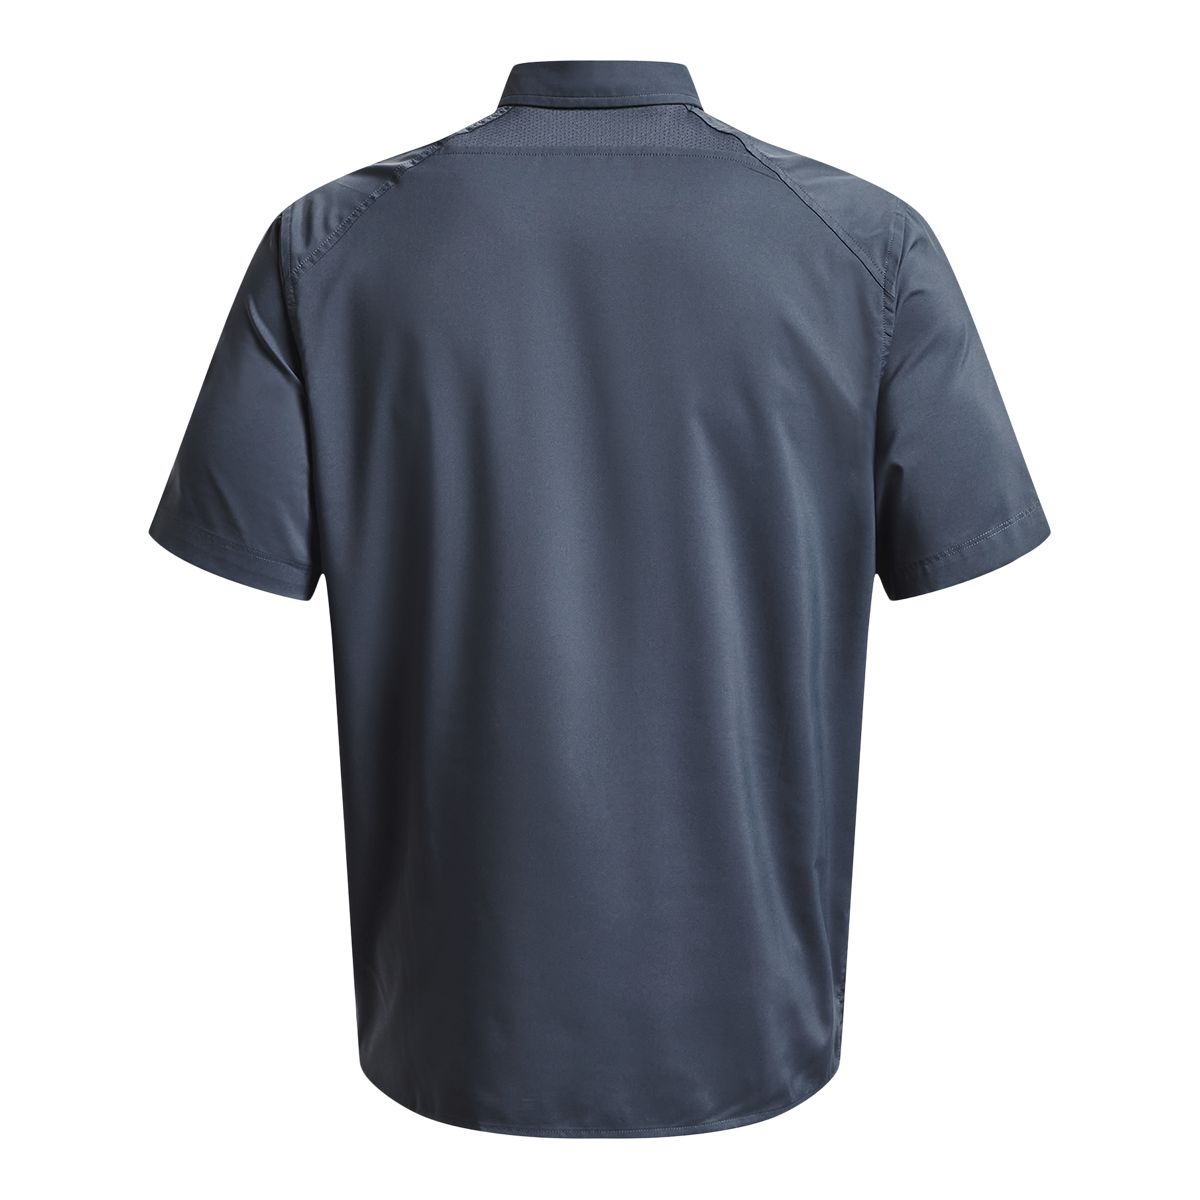 Under Armour Drift Tide 2.0 Short-Sleeve Shirt for Men